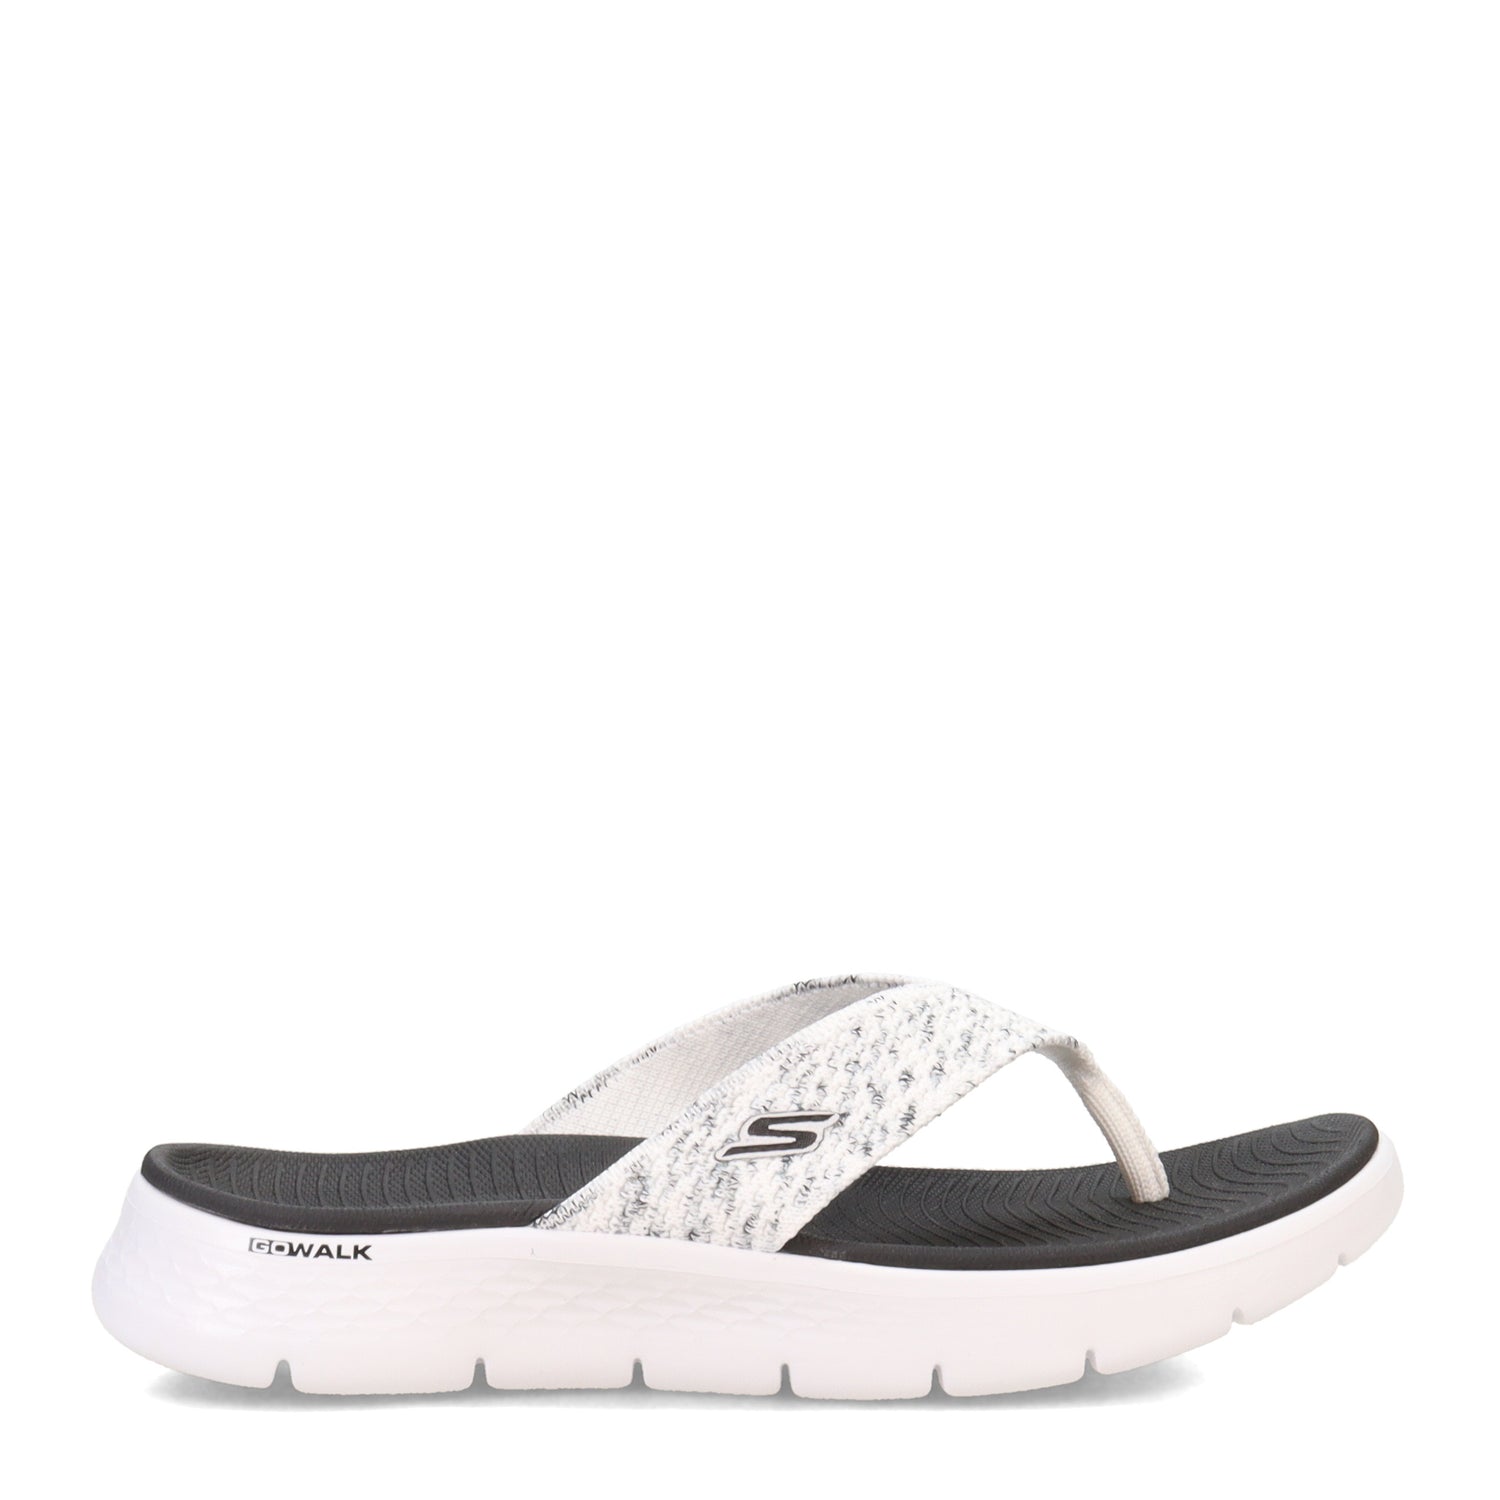 Peltz Shoes  Women's Skechers On the GO Walk Flex Sandal WHITE 141400-WBK